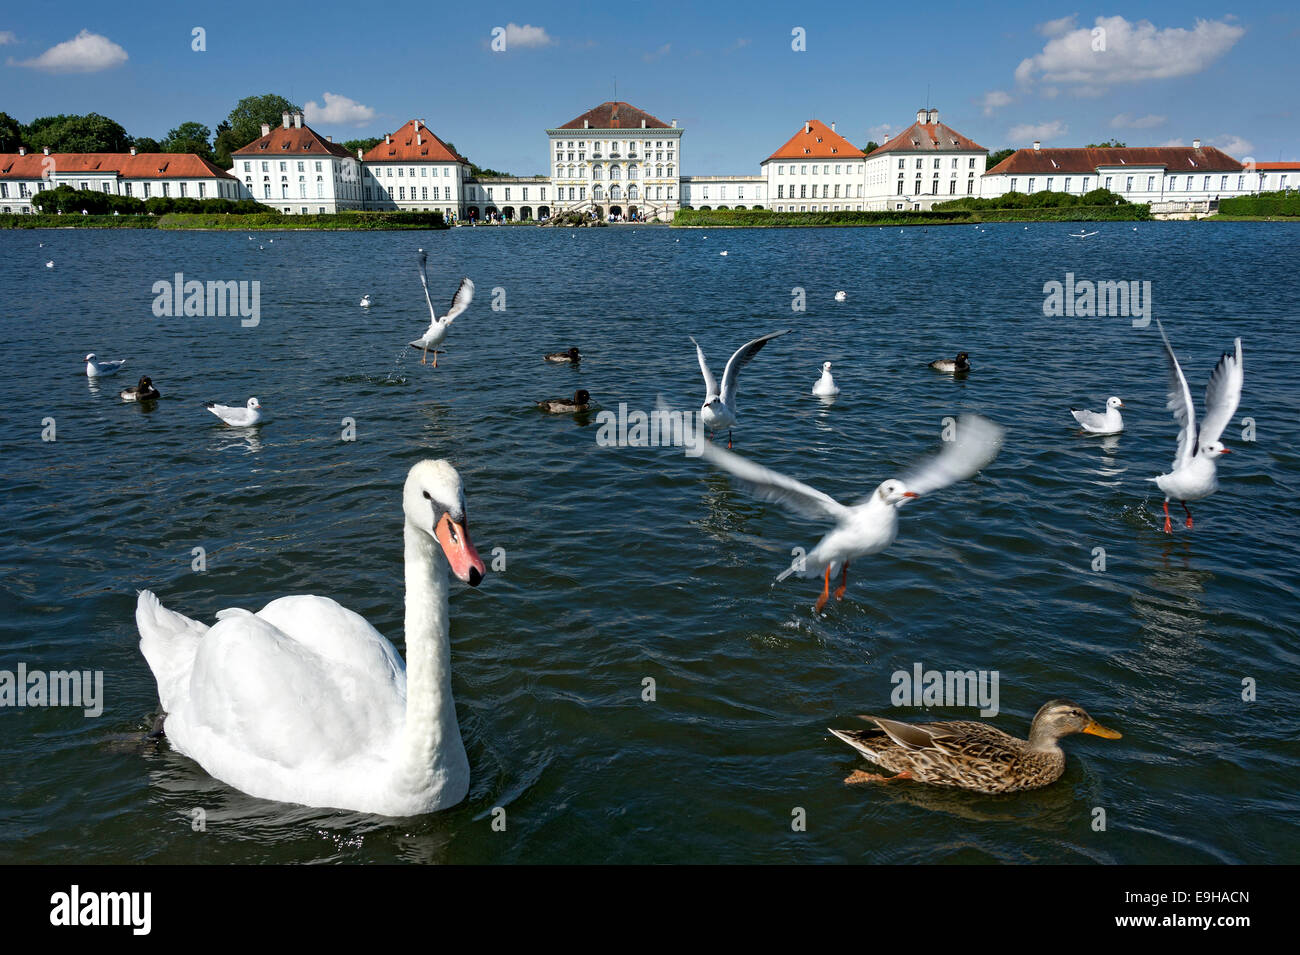 Le Cygne tuberculé (Cygnus olor) et autres oiseaux d'eau sur le canal du palais, derrière le côté est du château Nymphenburg, Munich Banque D'Images